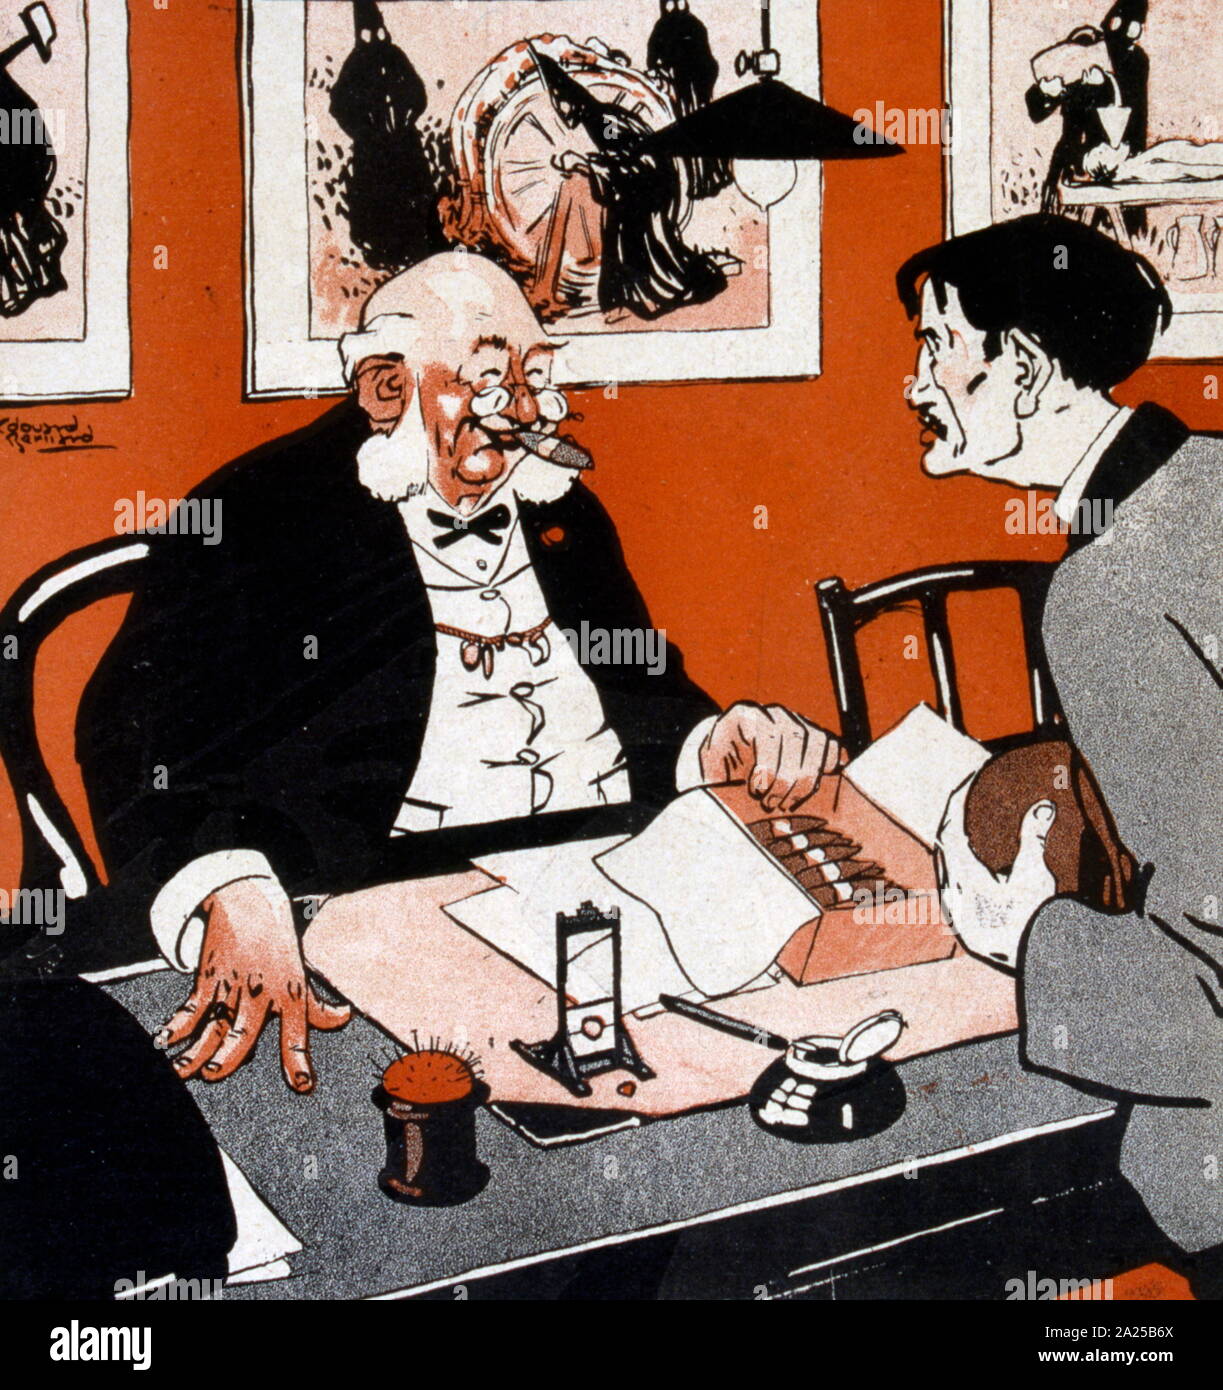 Illustration satirique français montrant un riche employeur avec havanes parlant à un pauvre employé désespéré Banque D'Images